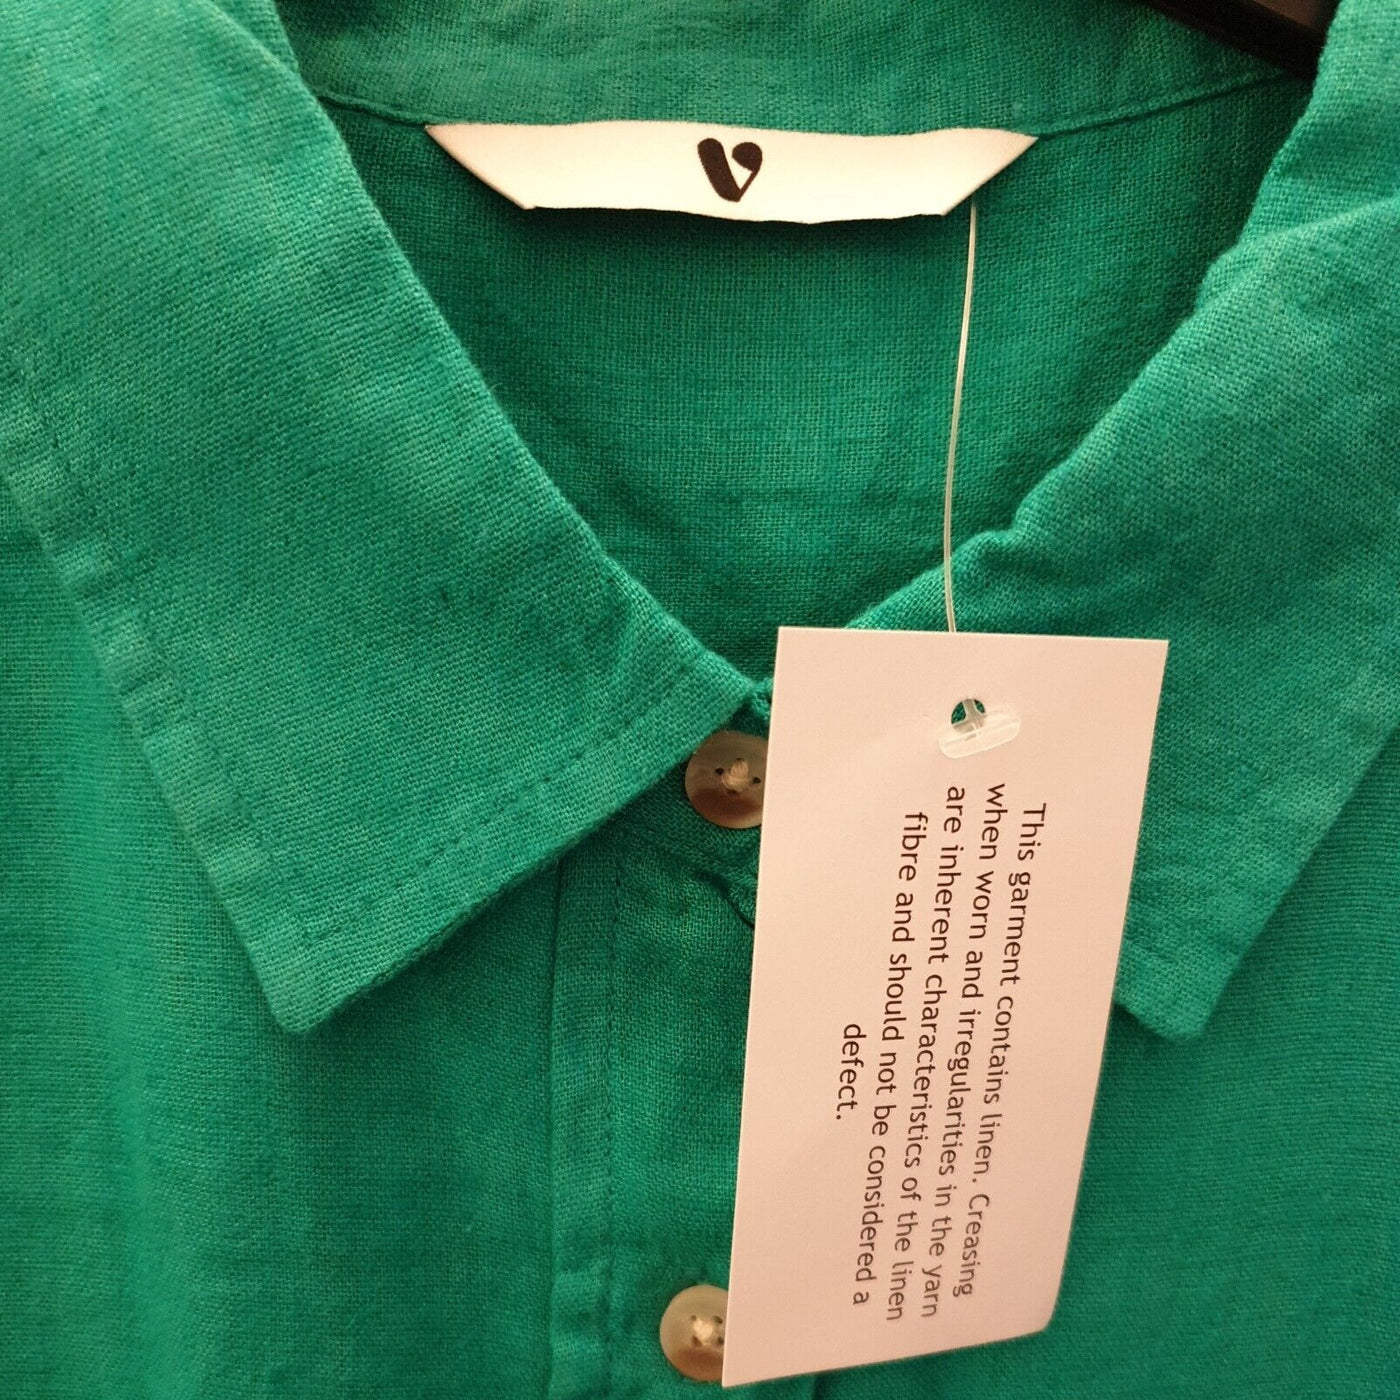 Womens Green Long Sleeve Shirt UK 12****Ref V261